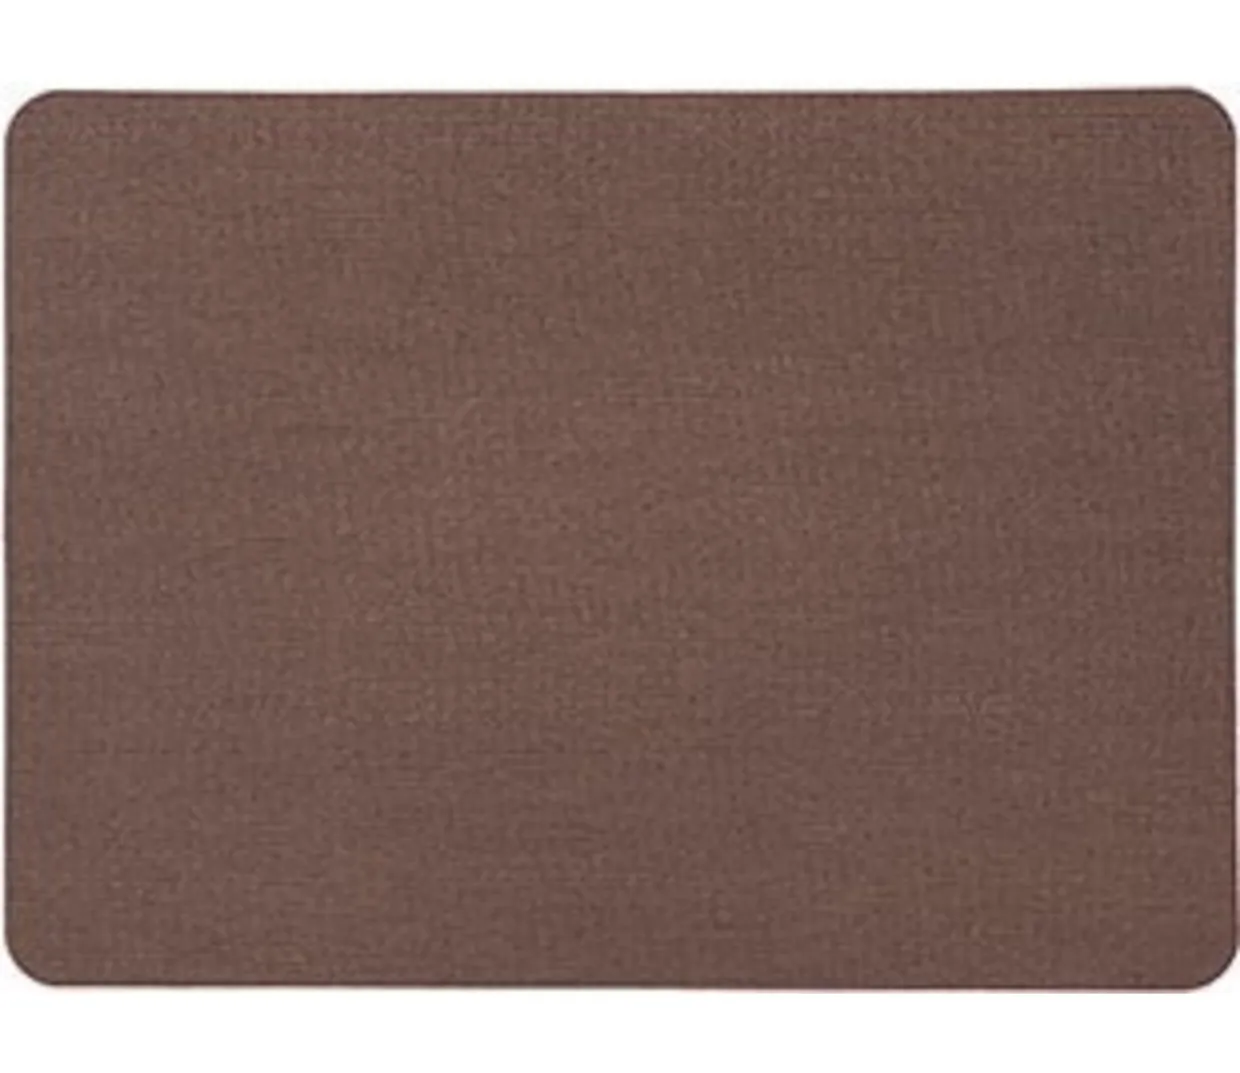 Placemat canvaslook rechthoekig bruin - 45 x 30 cm